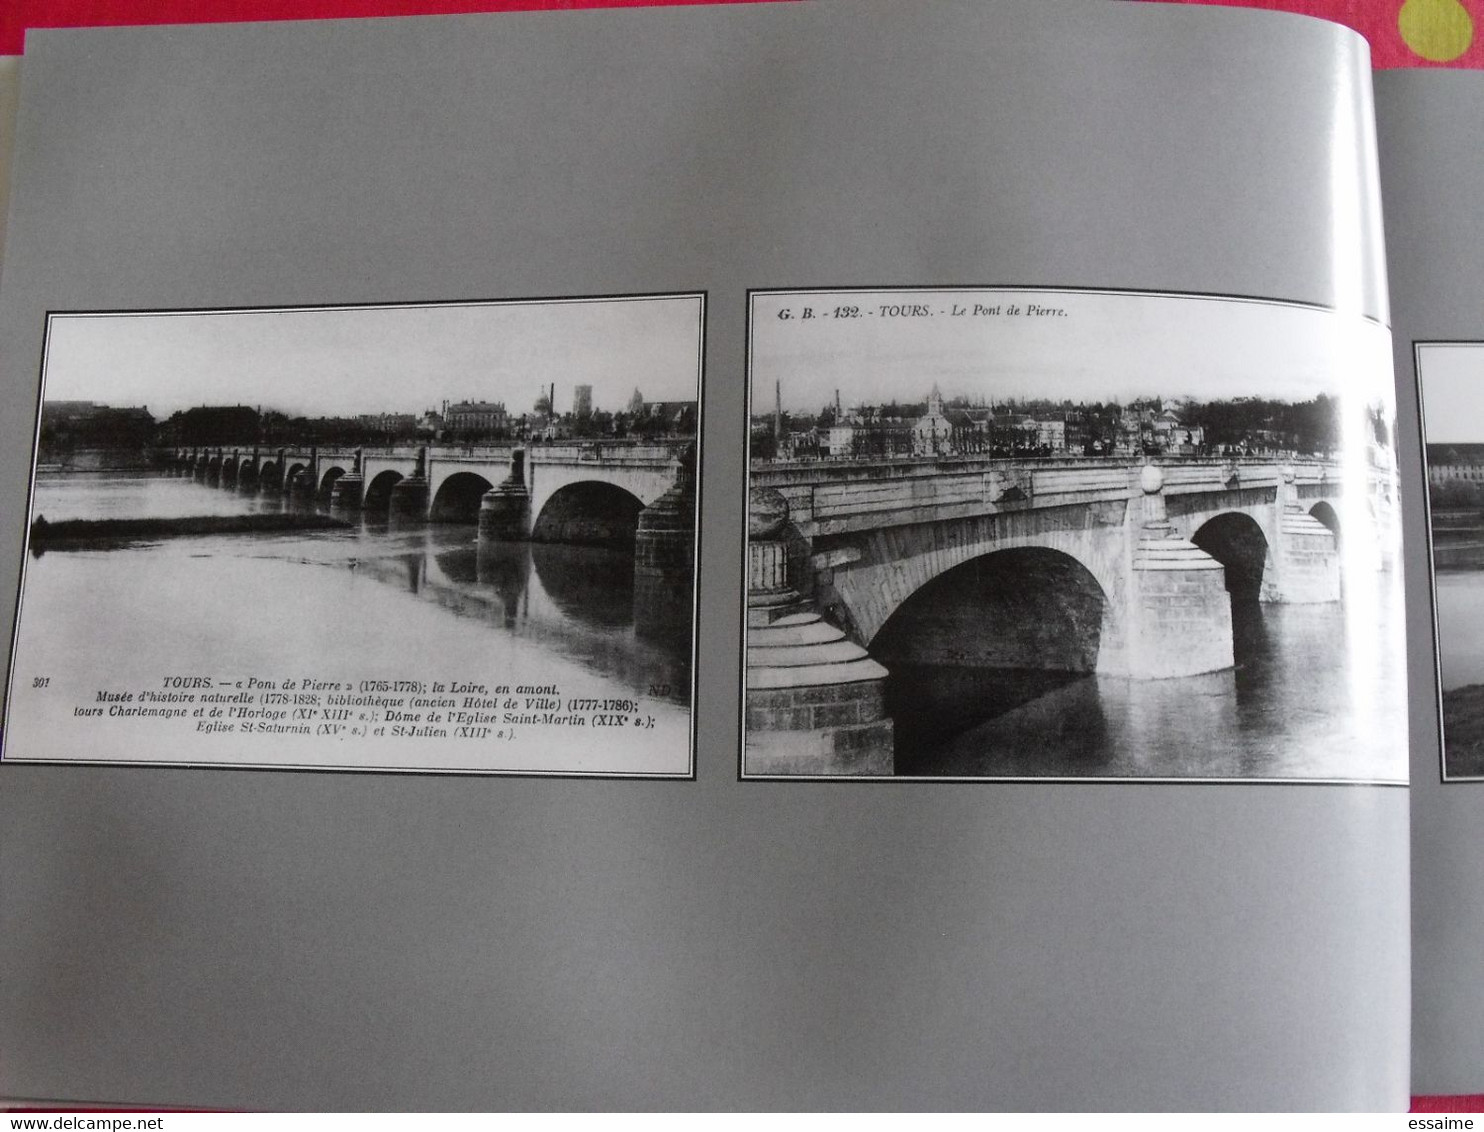 miroir de Tours 1900-200. carte postale photo.Bernard & Lemoine-Chevallereau. Indre et Loire ville